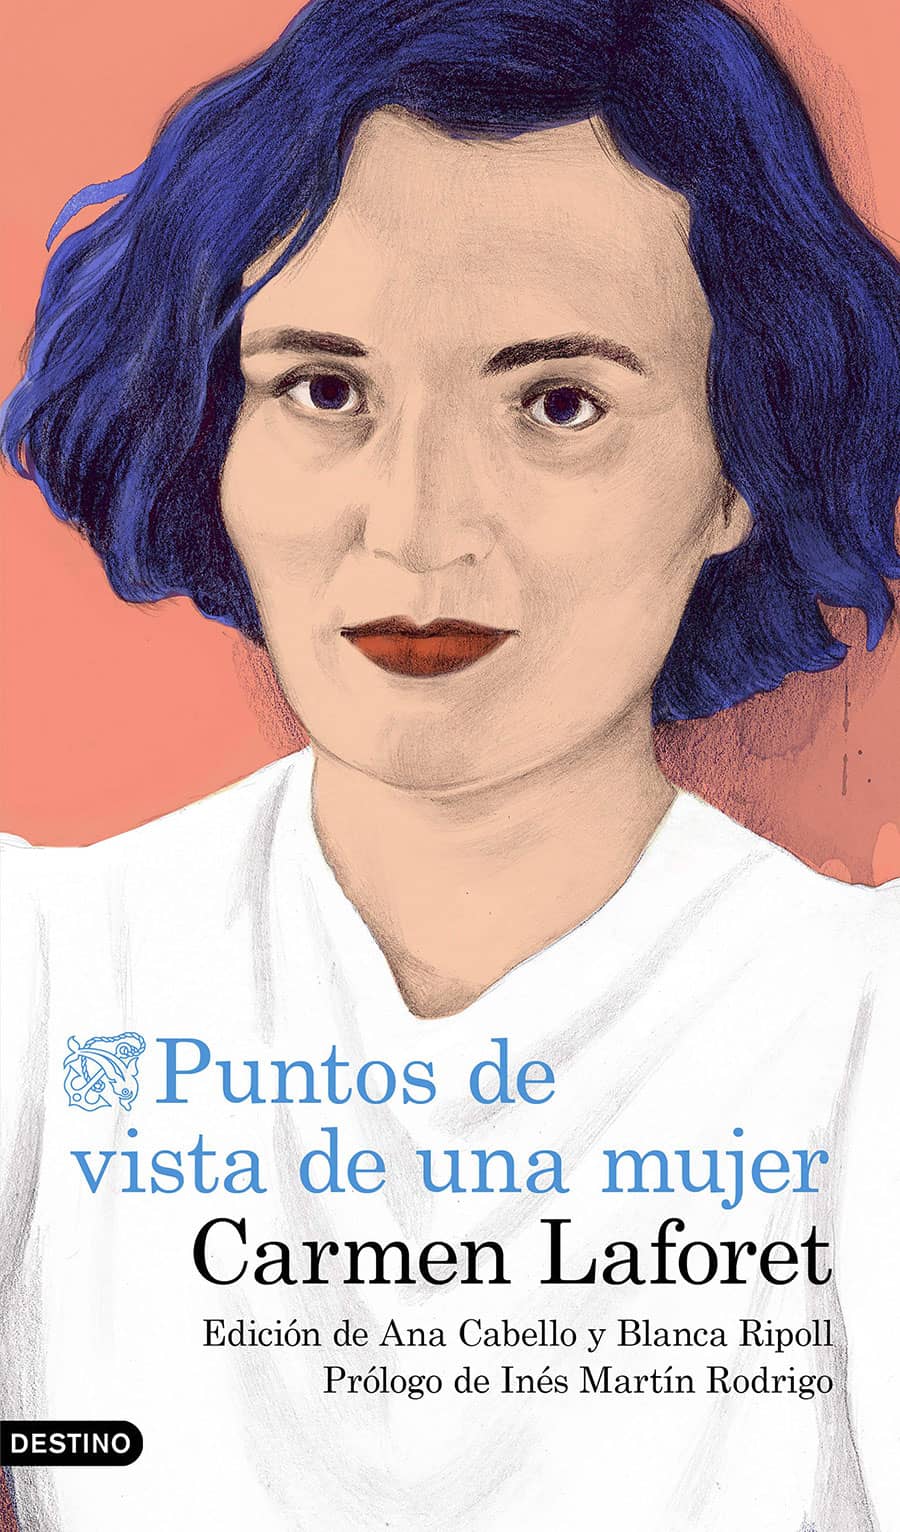 Cover illustration for "Carmen Laforet , puntos de vista de una mujer"